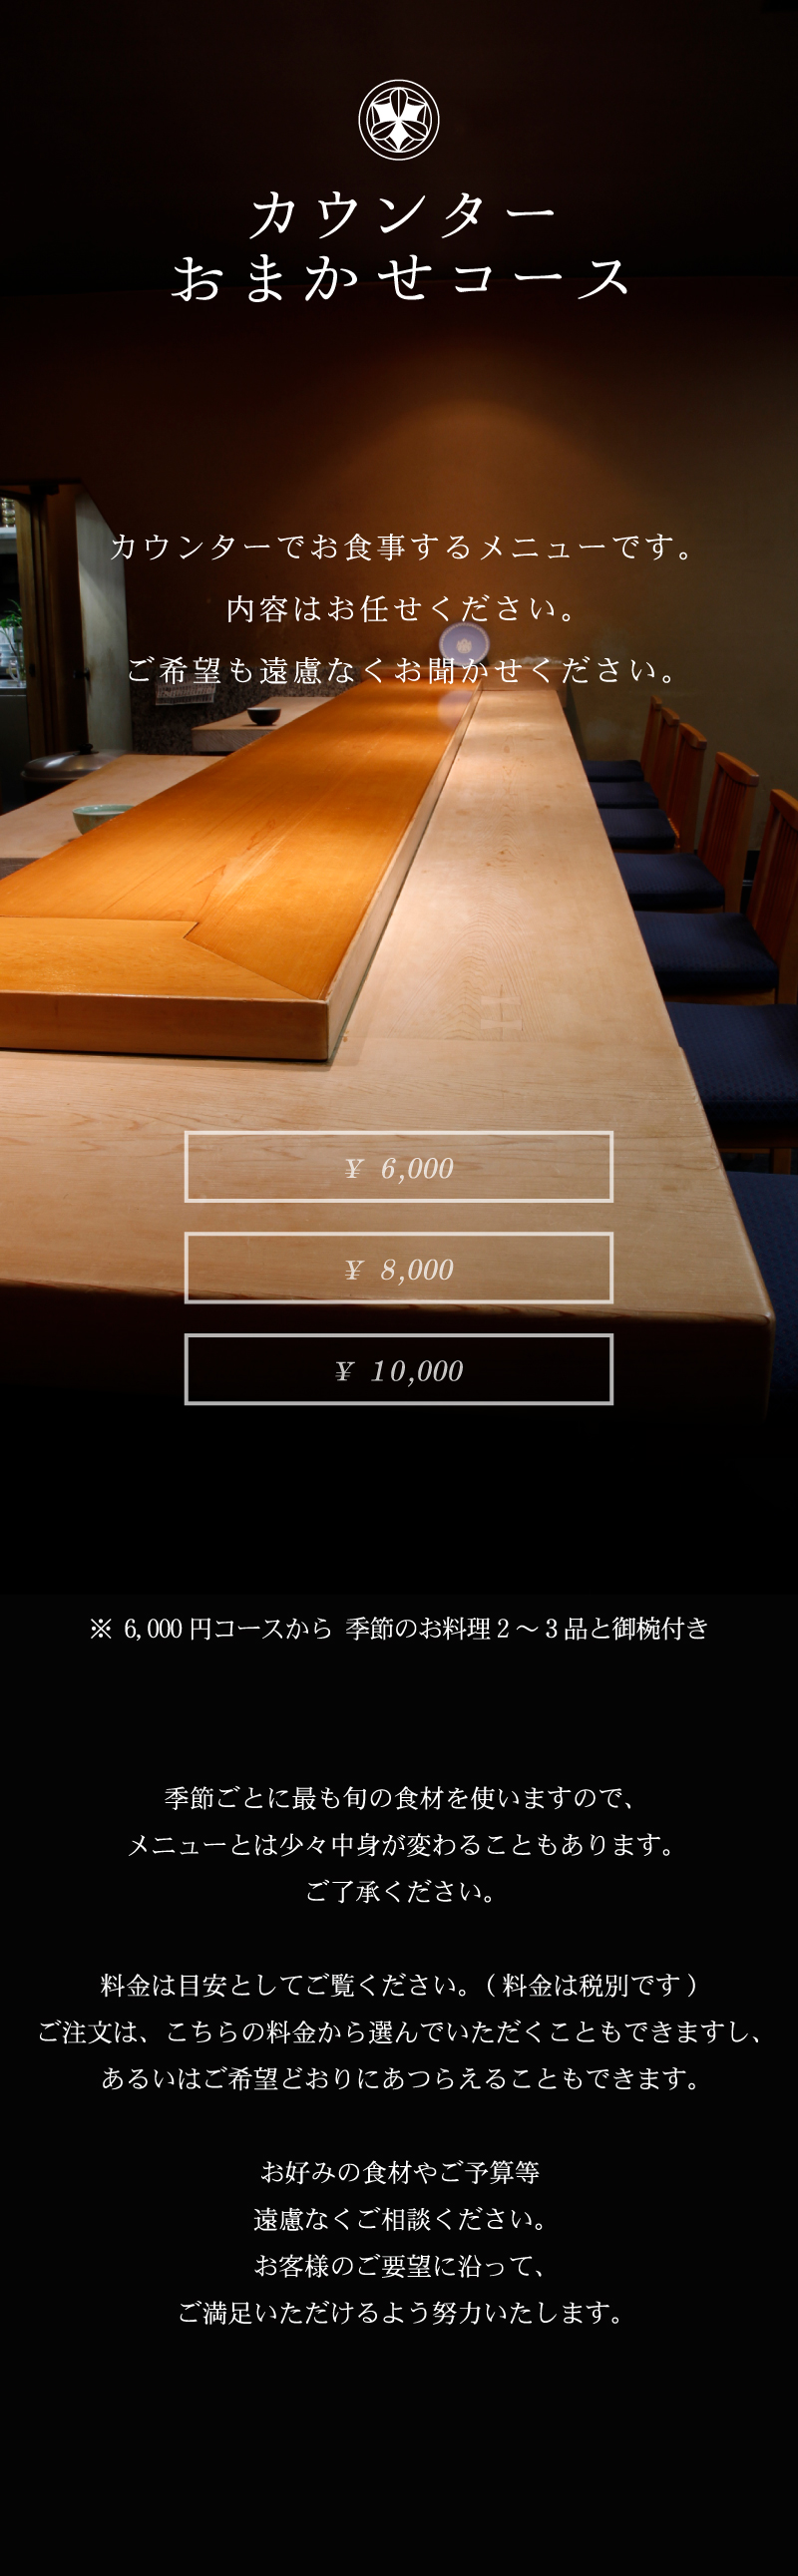 カウンターおまかせコース 「弁慶鮨」長年培った匠の技を目の前に、和の心と趣向を凝らした季節折々の料理をご堪能下さい。お客様のご希望どおりにあつらえることもできます。 カウンターでお食事するメニューです。内容はお任せください。ご希望も遠慮なくお聞かせ下さい。 ¥5,000 ¥6,000 ¥8,000 ¥10,000 ※6,000円コースから季節のお料理2~3品と御椀付き 季節ごとに最も旬の食材を使いますので、メニューとは少々中身が変わることもあります。ご了承ください。料金は目安としてご覧ください。(料金は税別です)注文は、こちらの料金から選んでいただくこともできますし、あるいはご希望どおりにあつらえることもできます。お好みの食材やご予算等遠慮なくご相談ください。お客様のご要望に沿って、ご満足いただけるよう努力いたします。